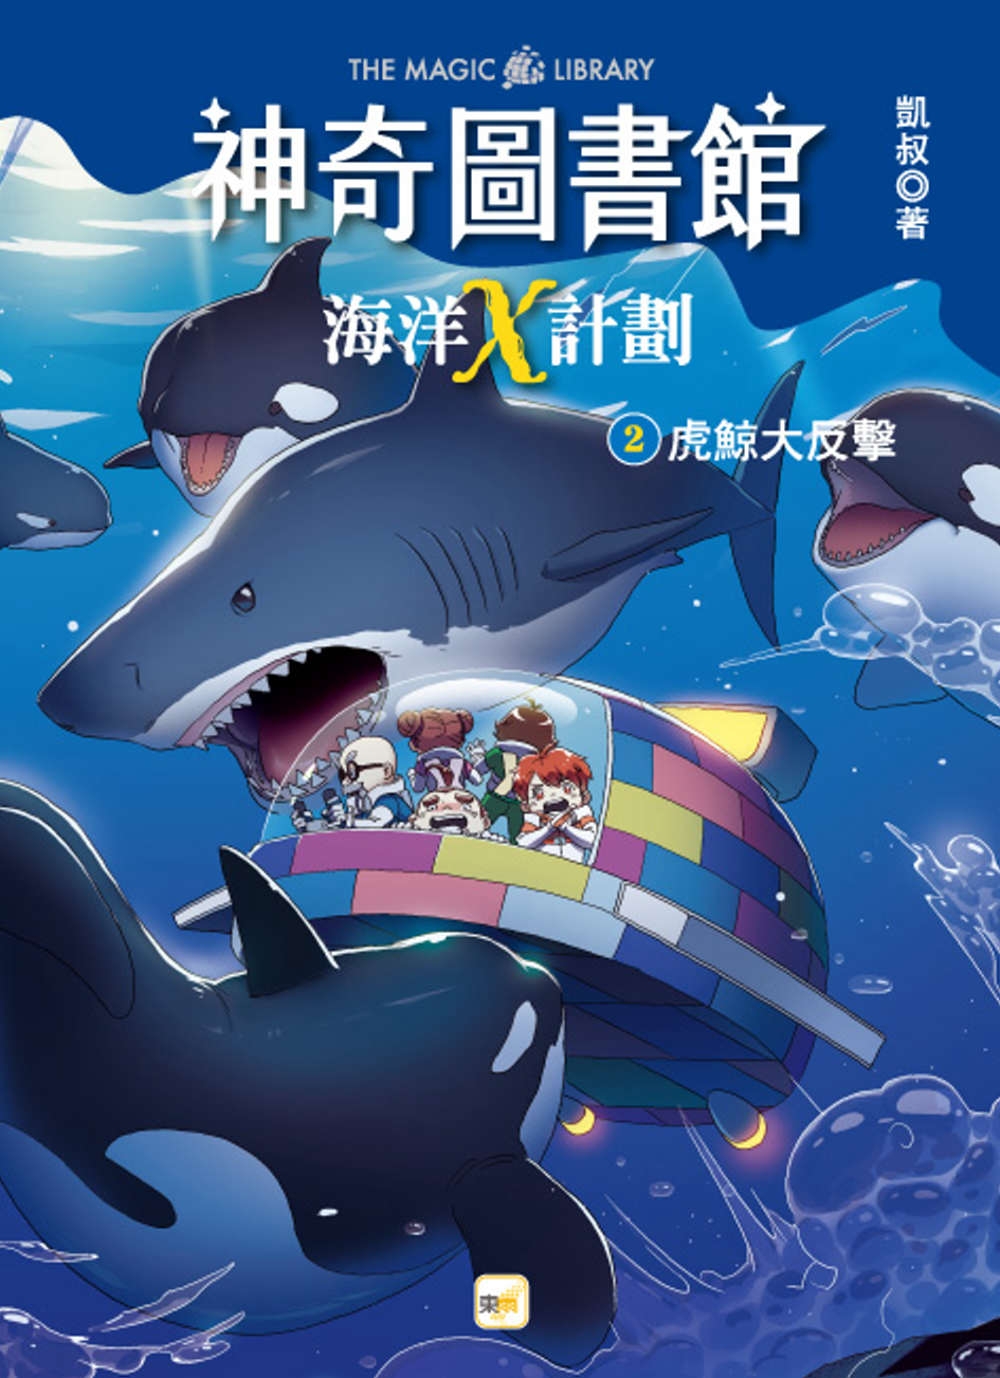 【神奇圖書館】海洋X計劃(2)：虎鯨大反擊（中高年級知識讀本）(限台灣)